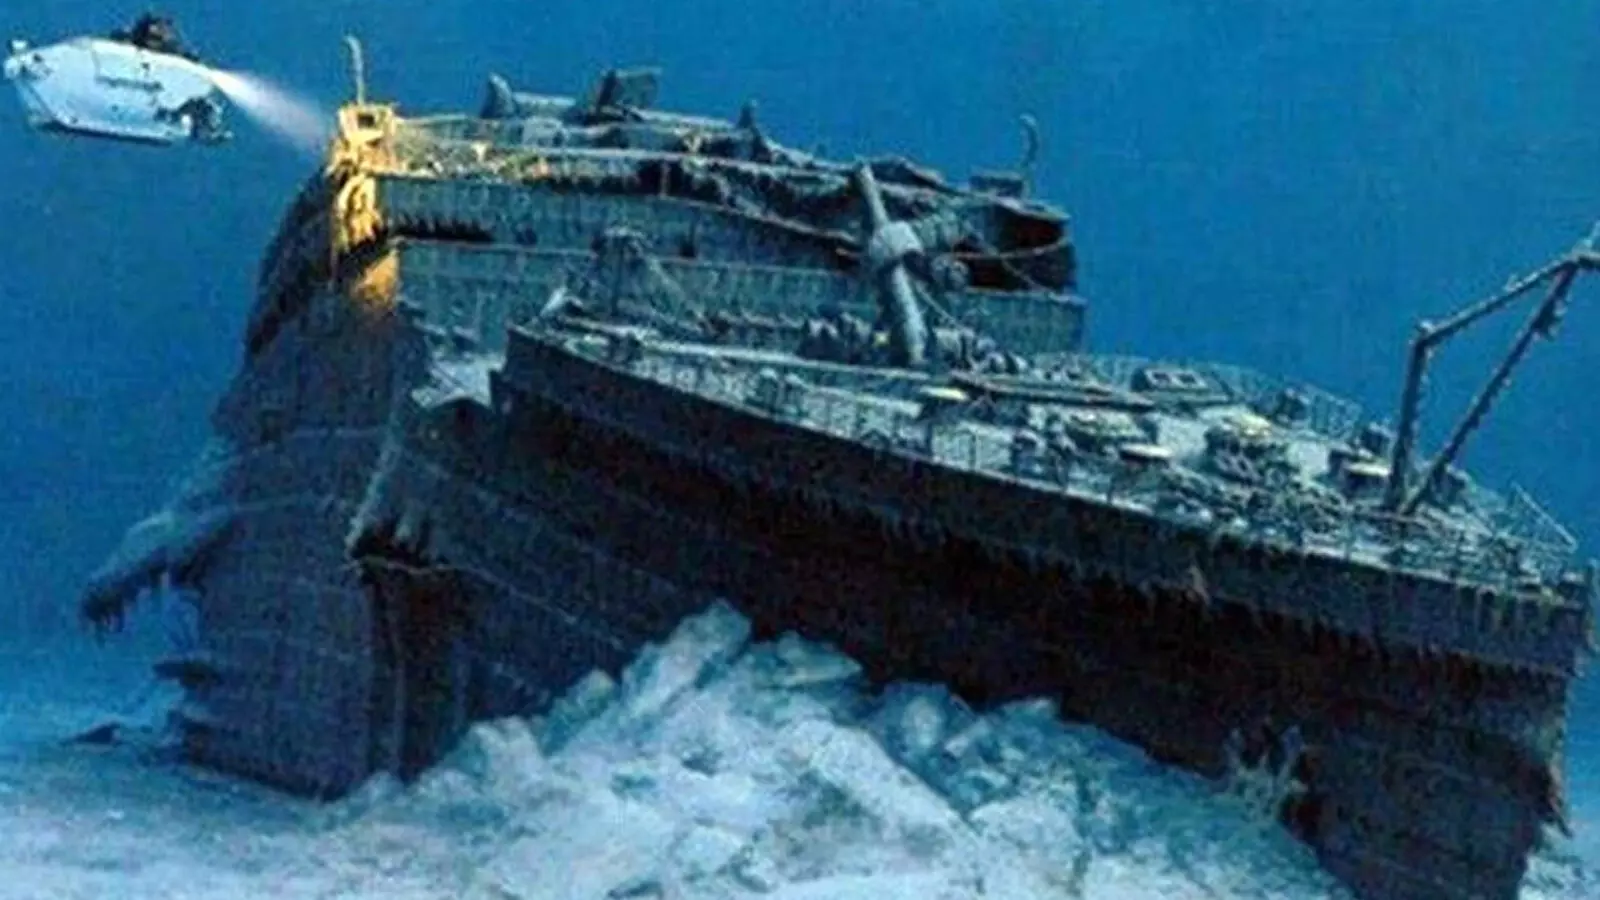 टाइटैनिक: 109 साल पहले  बने सबसे खूबसूरत जहाज के दुखद अंत की कहानी